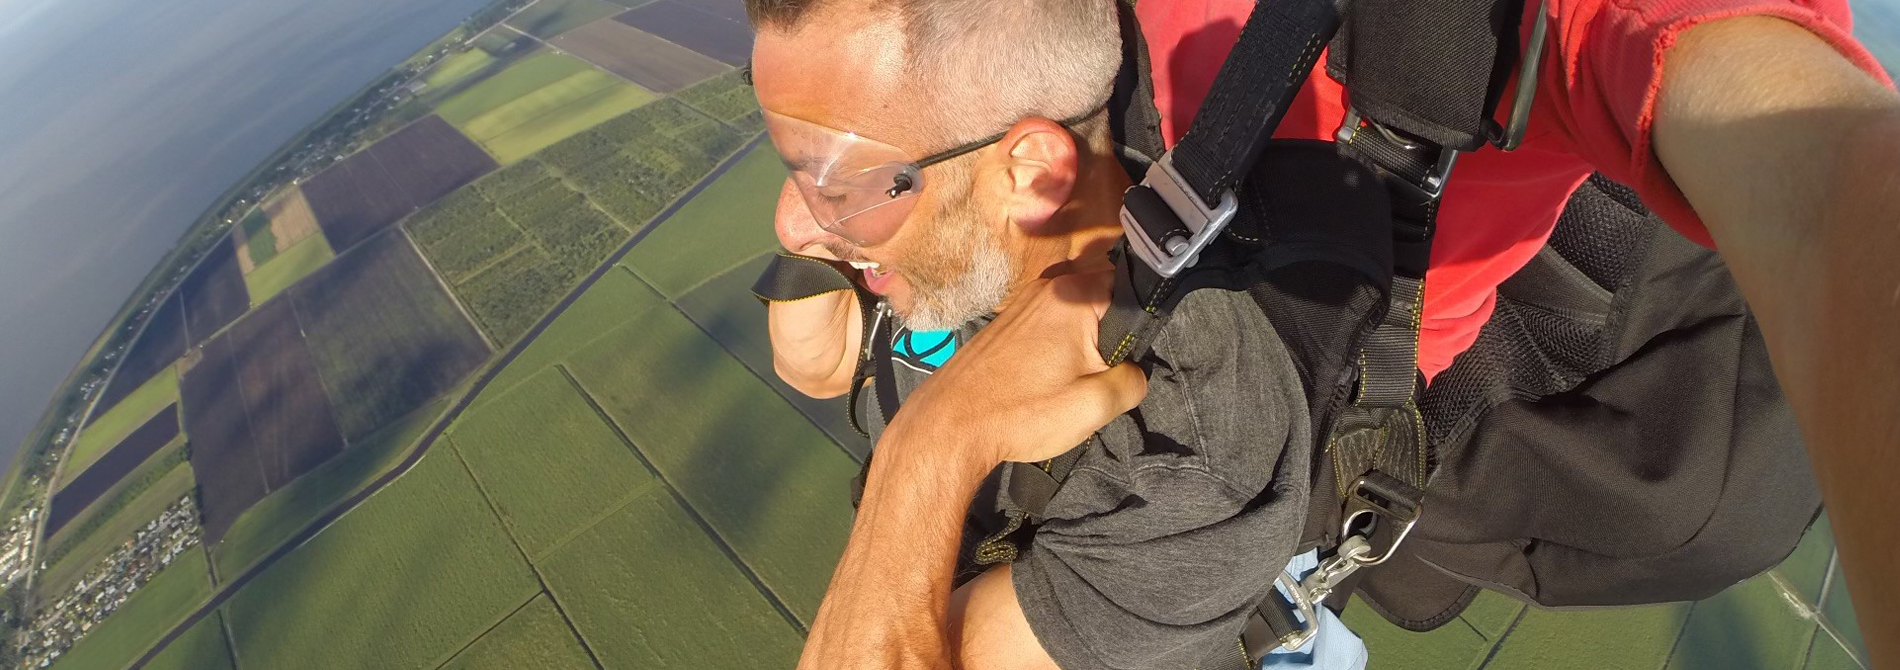 Adam Jablin skydiving